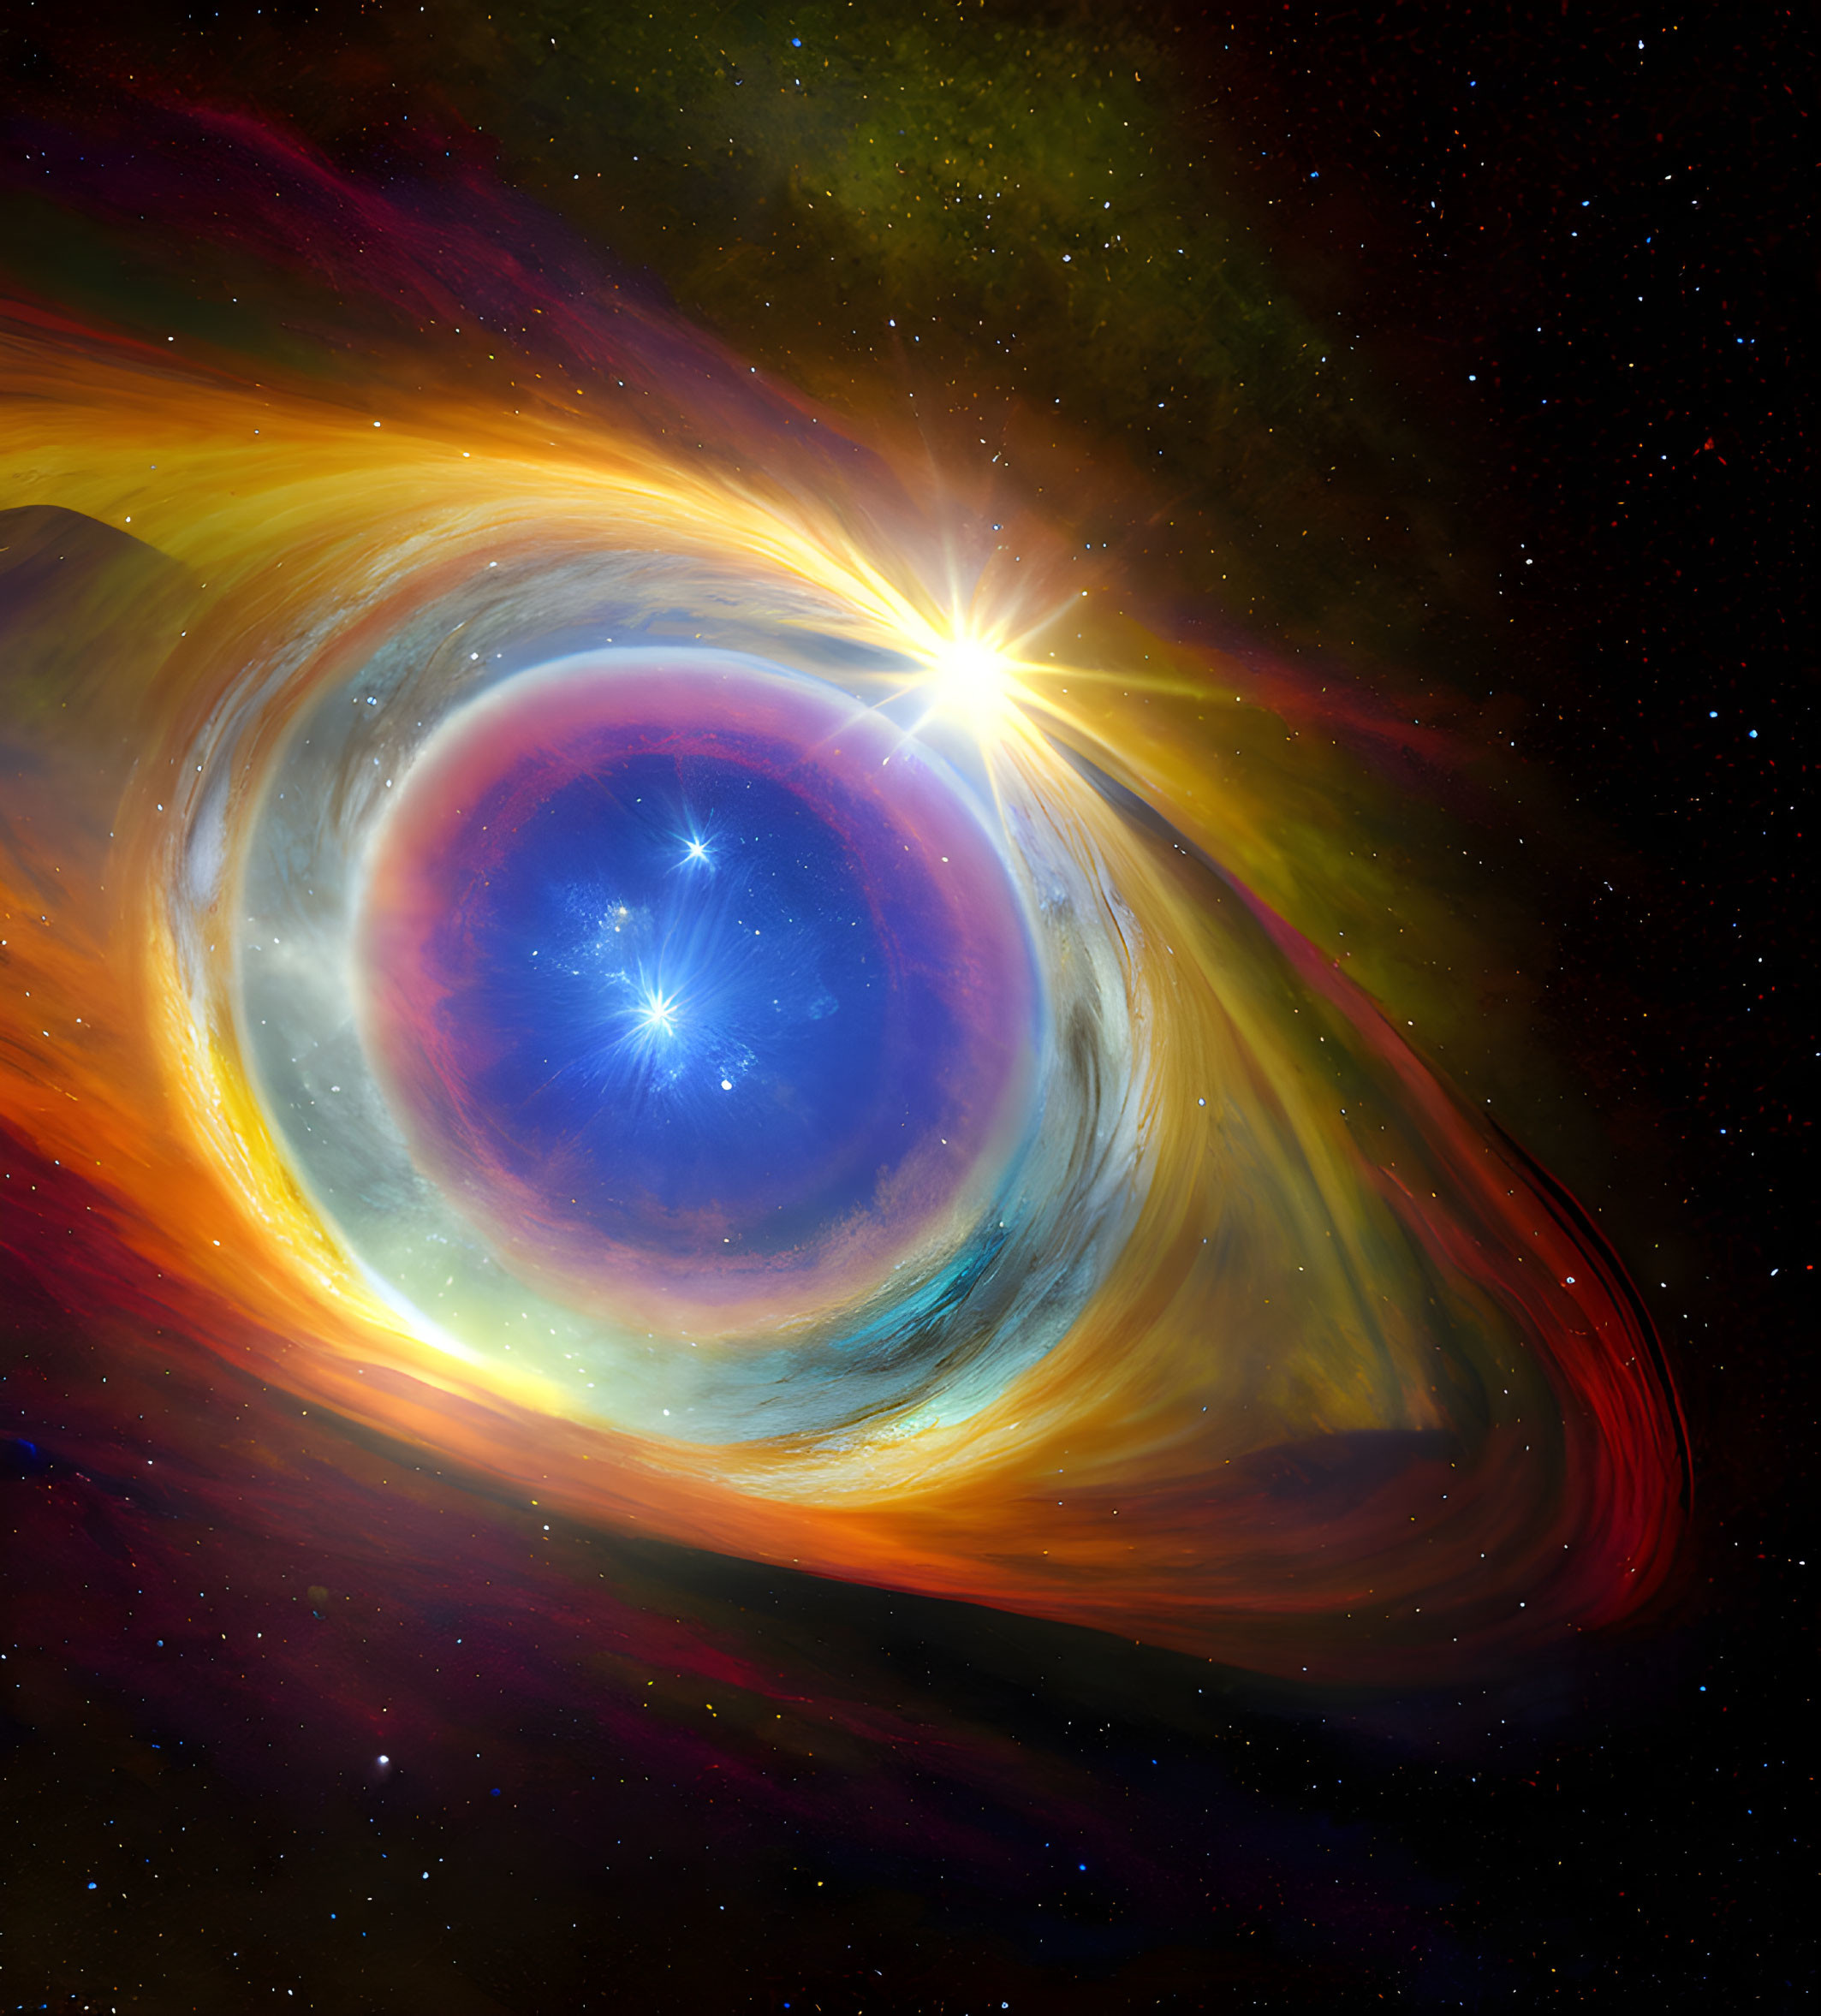 helix nebula eye